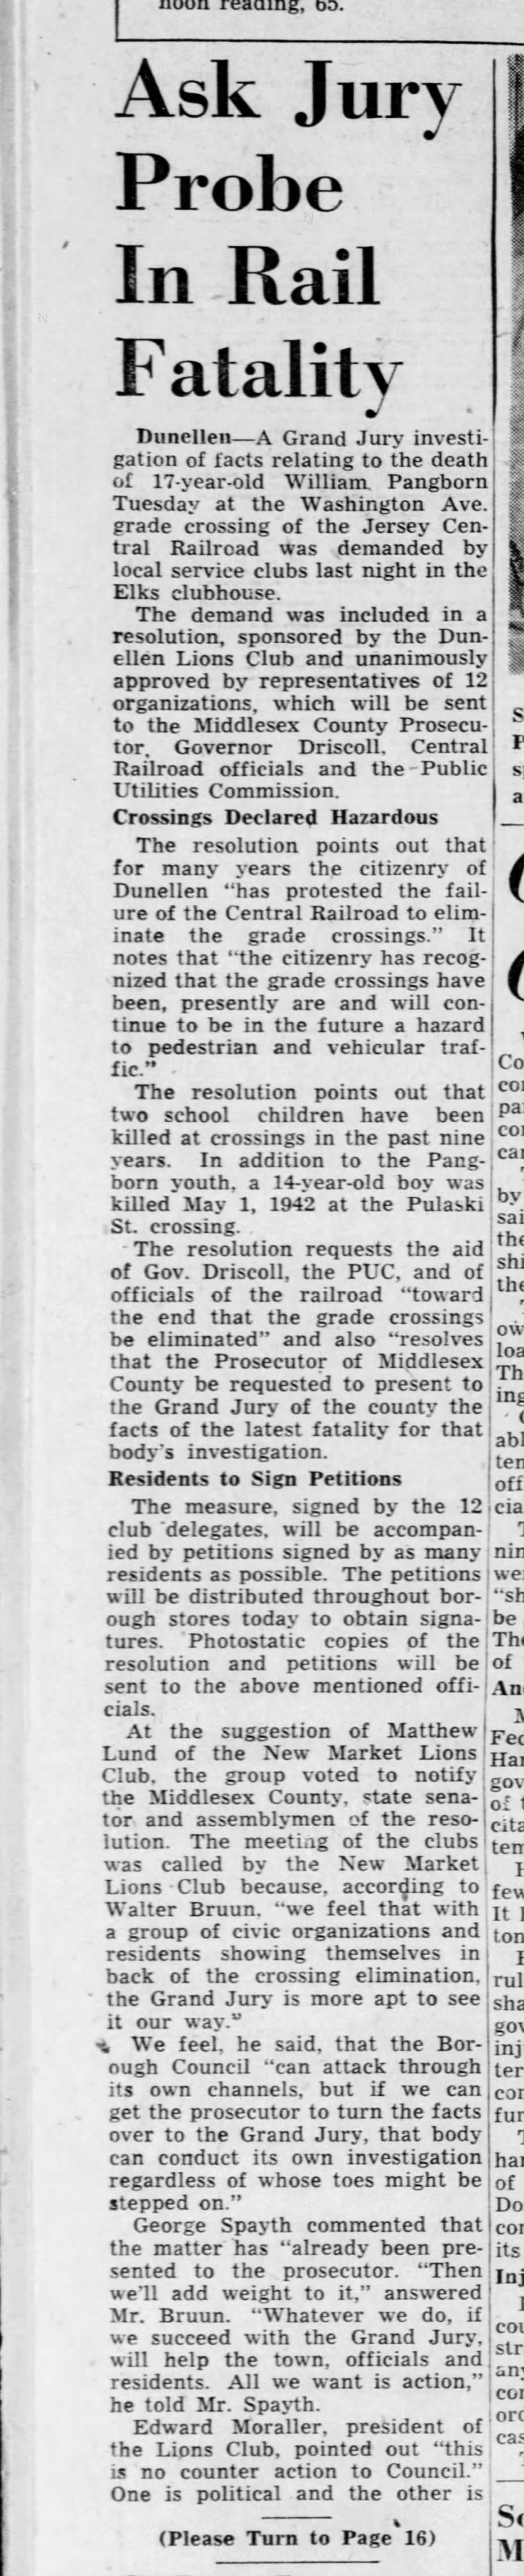 Grade crossings, April 7, 1951